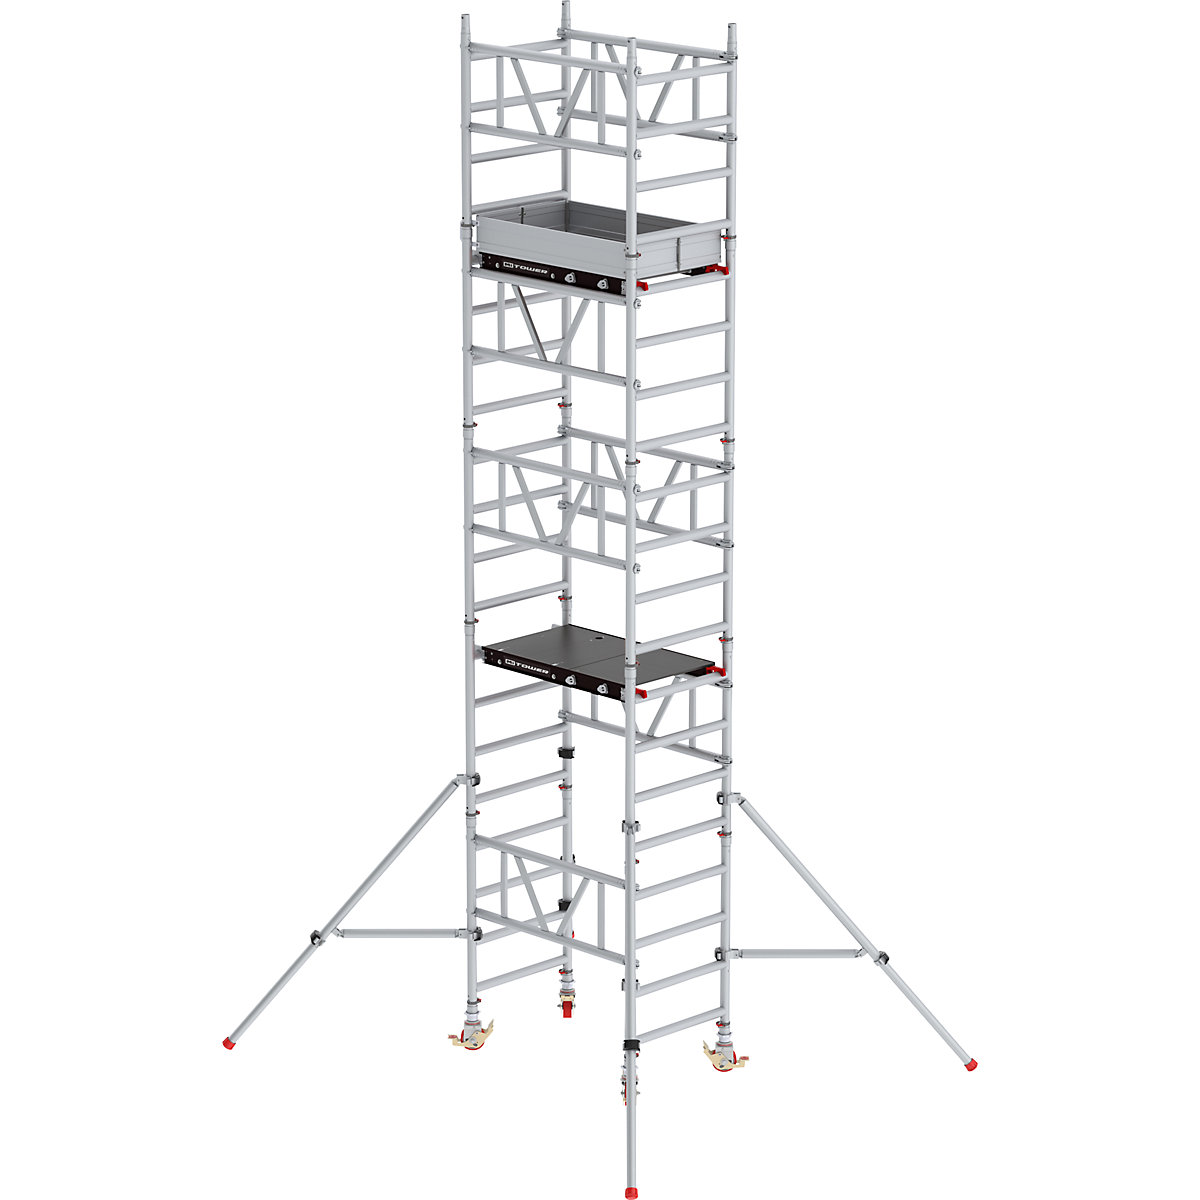 Hitro sestavljiv pomični oder MiTOWER Standard – Altrex, ploščad Fiber-Deck®, DxŠ 1200 x 750 mm, delovna višina 6 m